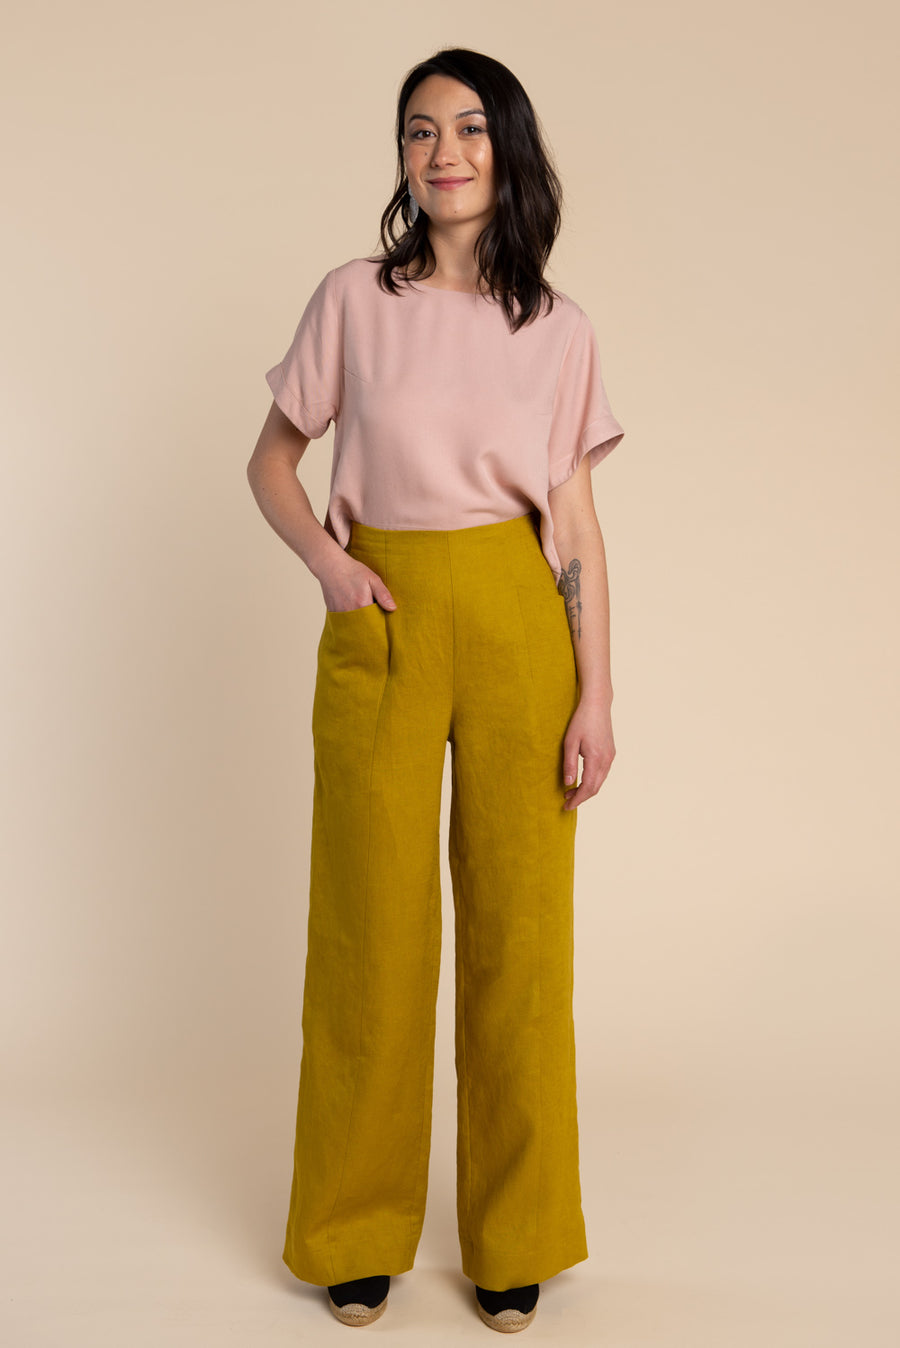 Pietra Shorts & Pants Pattern | Sewing Pattern – Closet Core